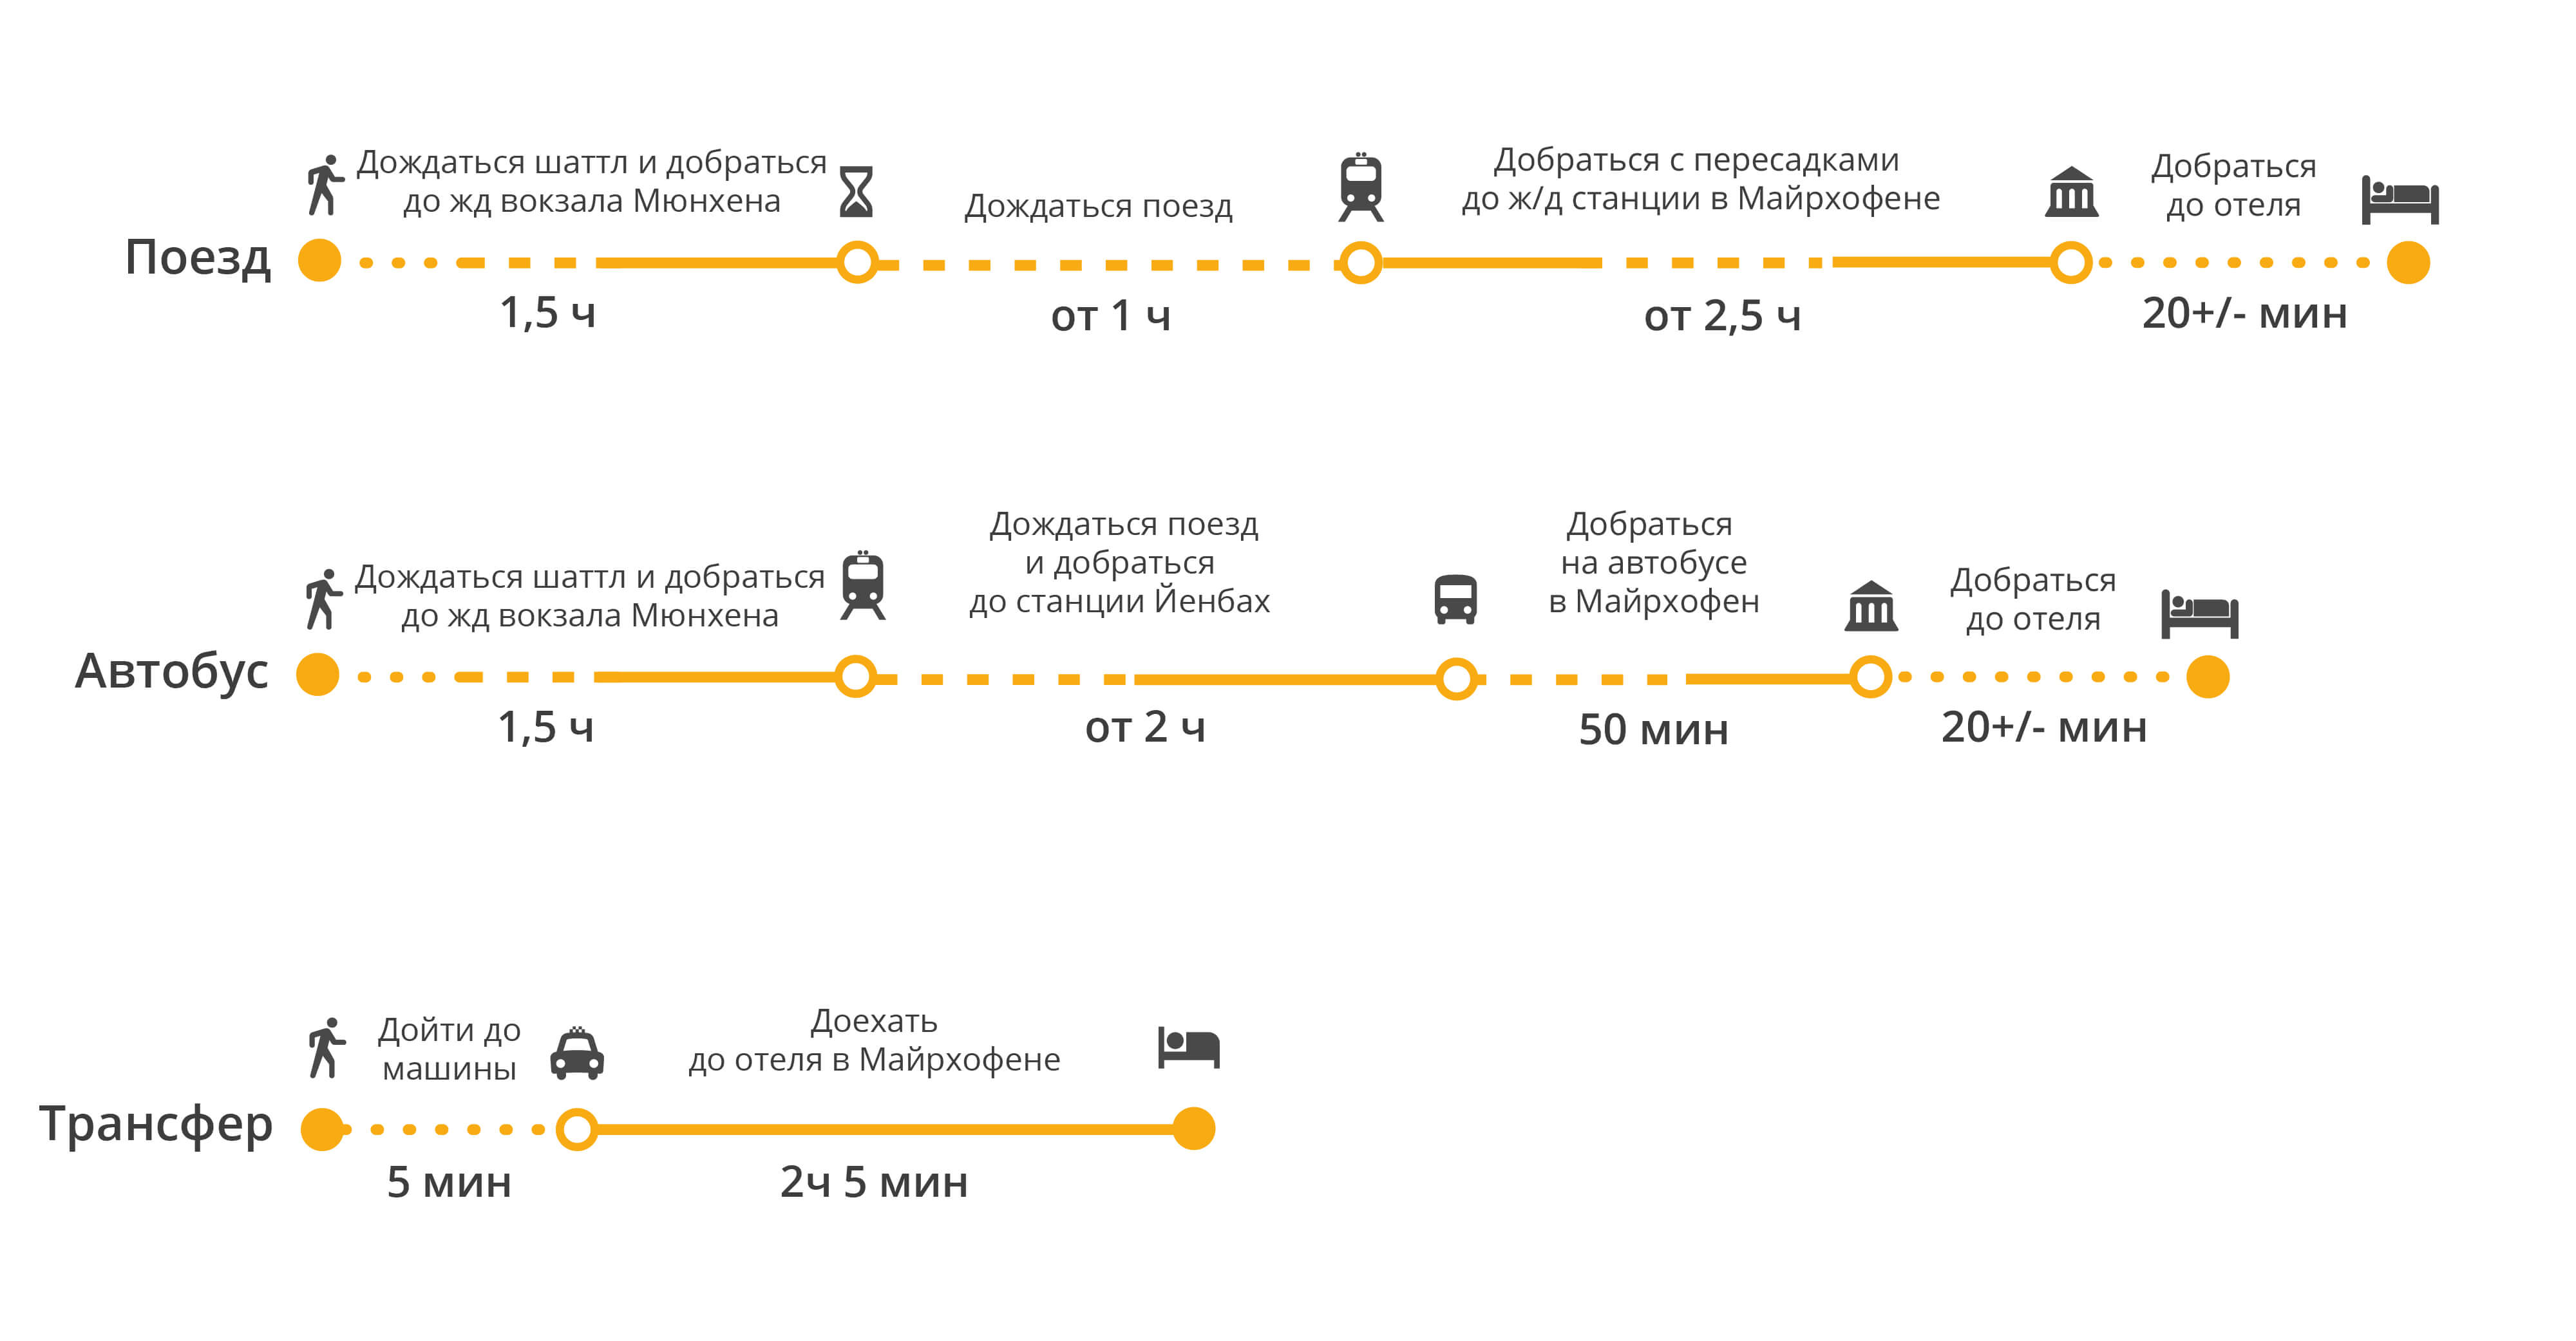 Проложенный маршрут от дрездена до мюнхена